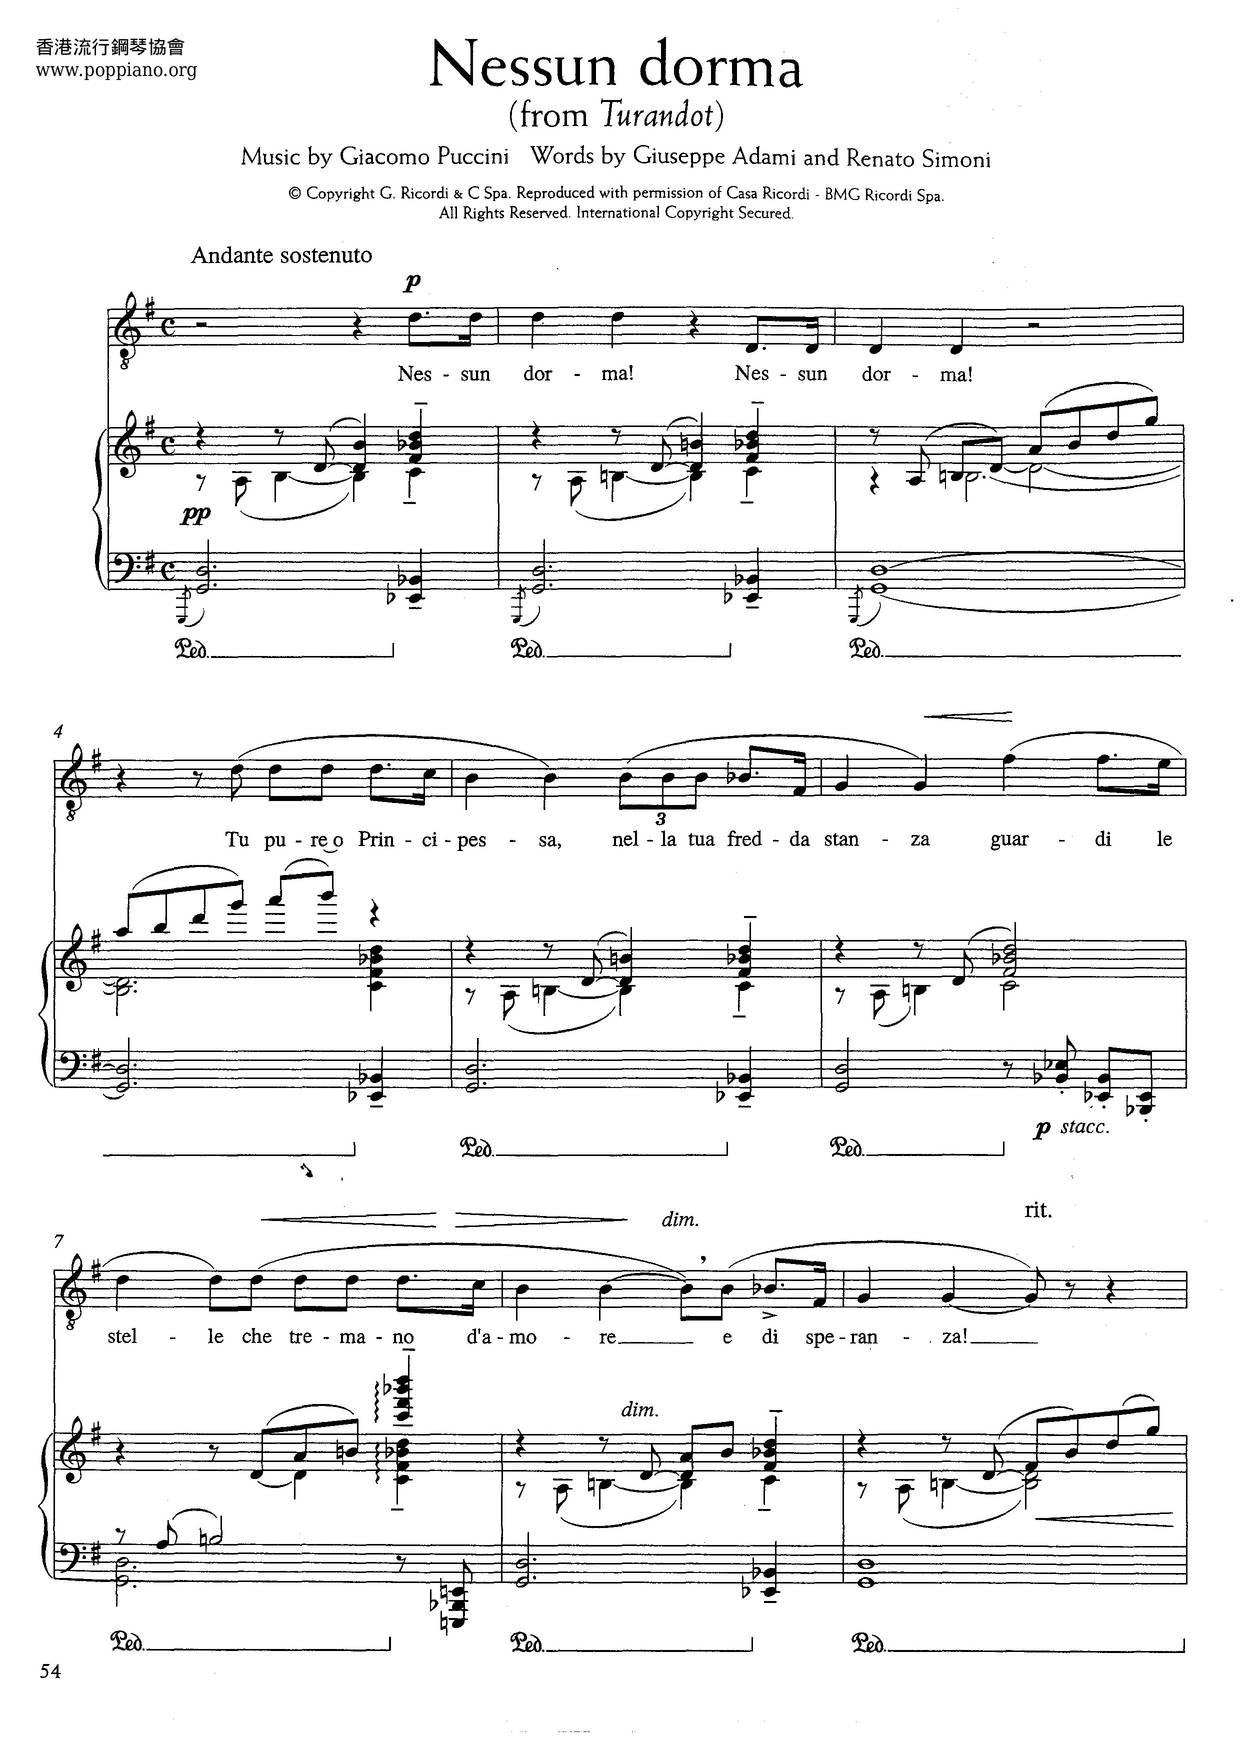 Nessun Dorma From Turandot (Puccini) Score